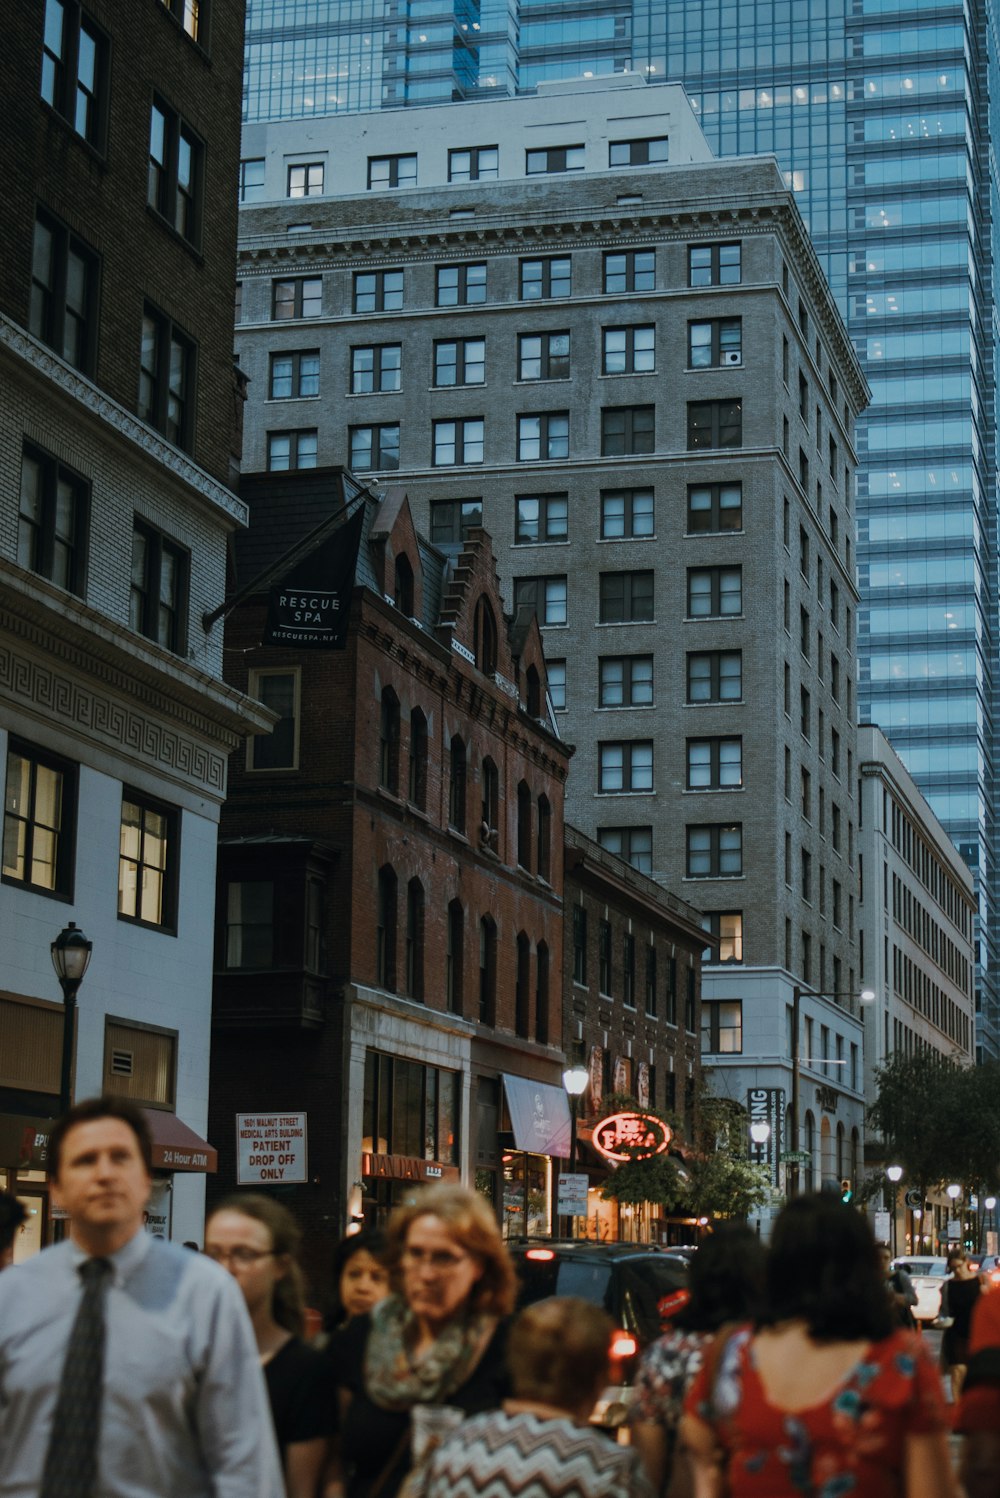 a group of people walking on a street between buildings